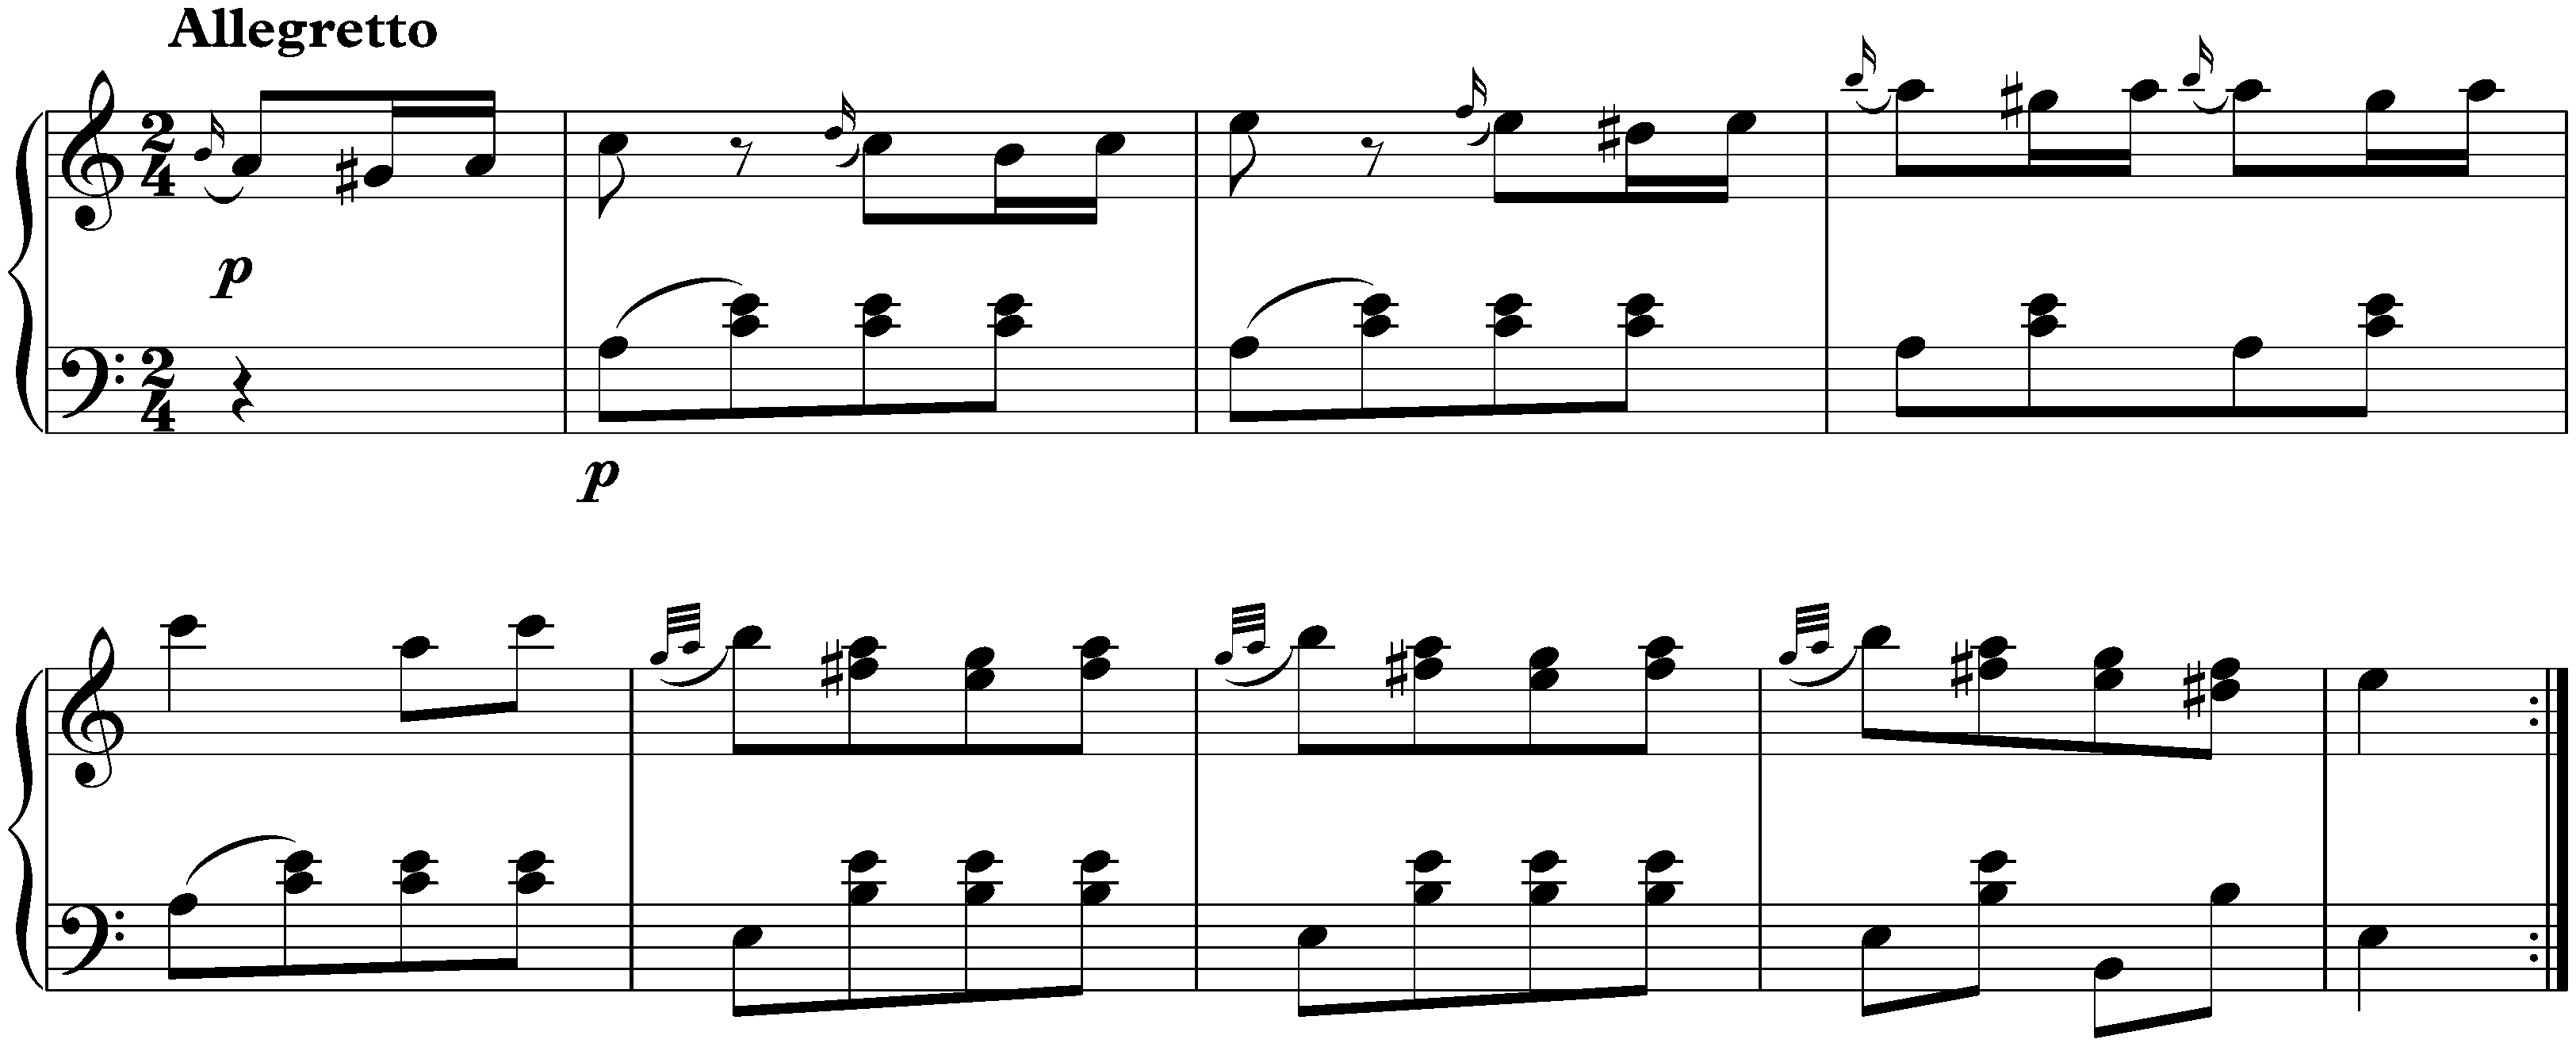 Sonata in A major, KV 331/300i; 3. Alla Turca: Allegretto